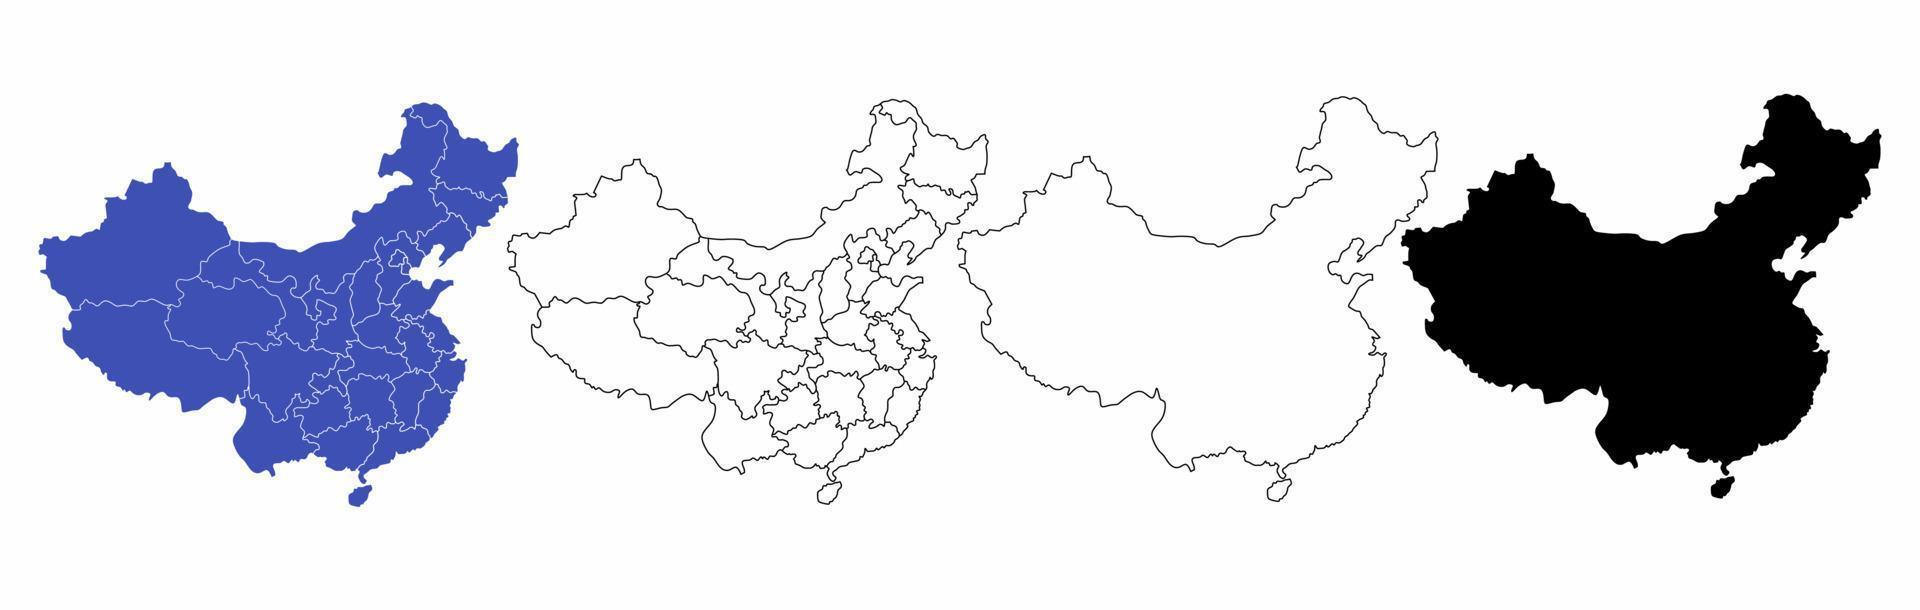 carte de la république populaire de chine set isolé sur fond blanc vecteur